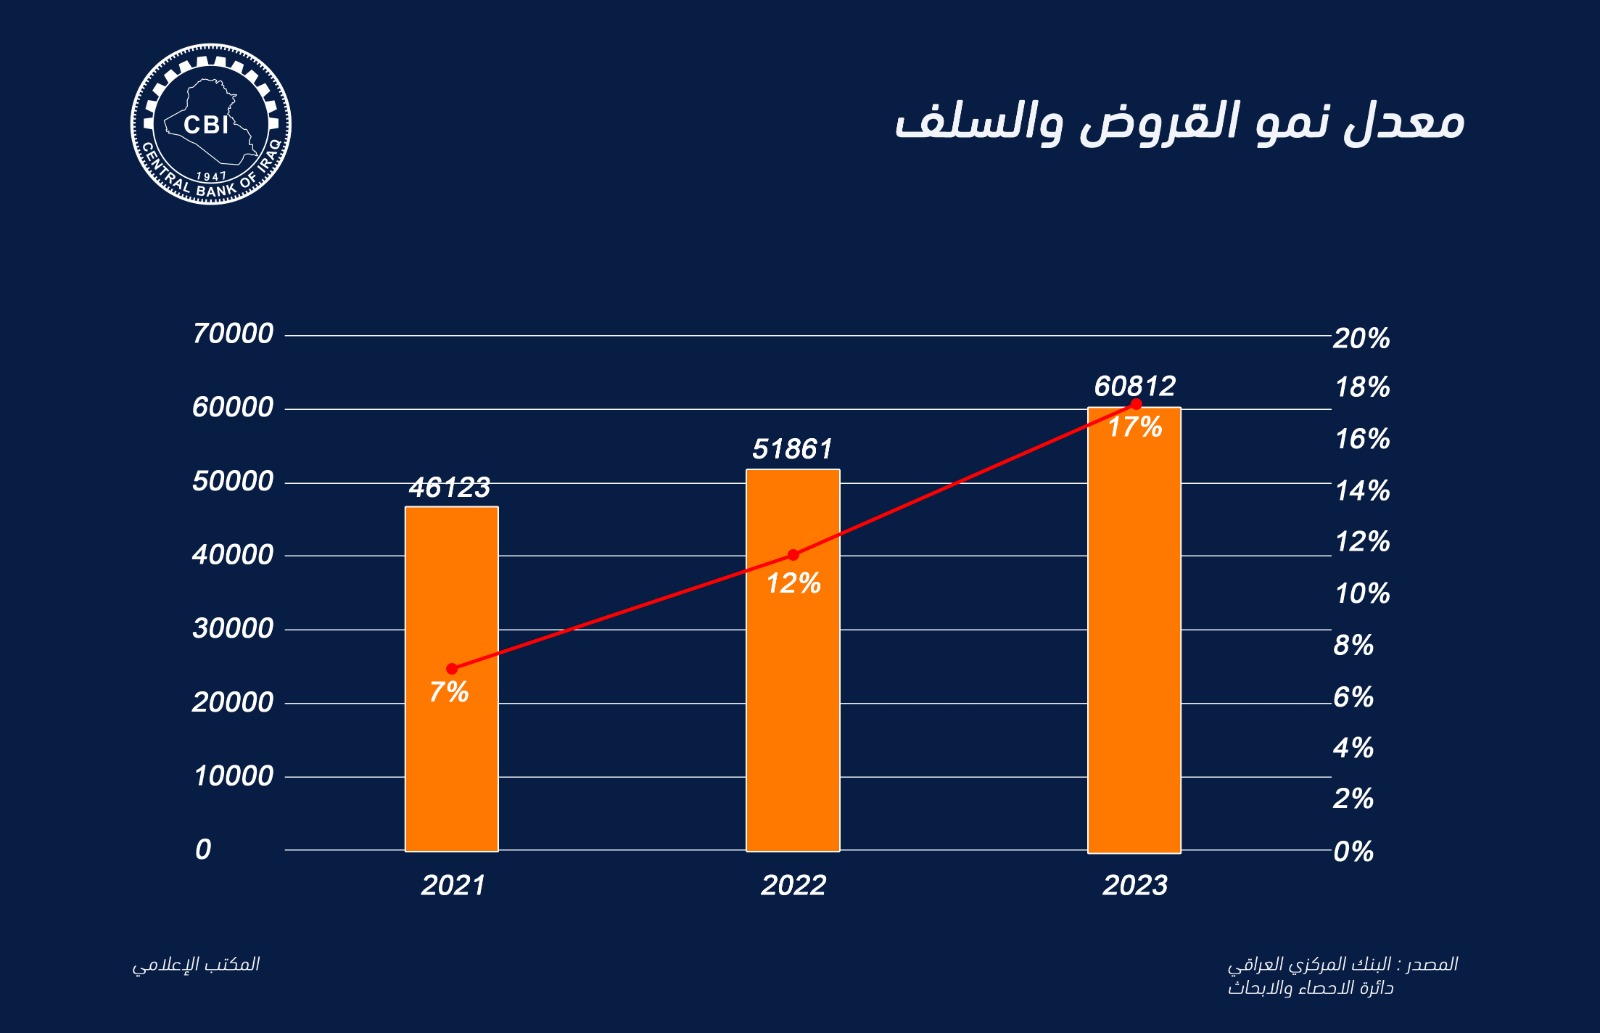 البنك المركزي العراقي يعلن ارتفاع حجم القروض والسلف خلال 2023